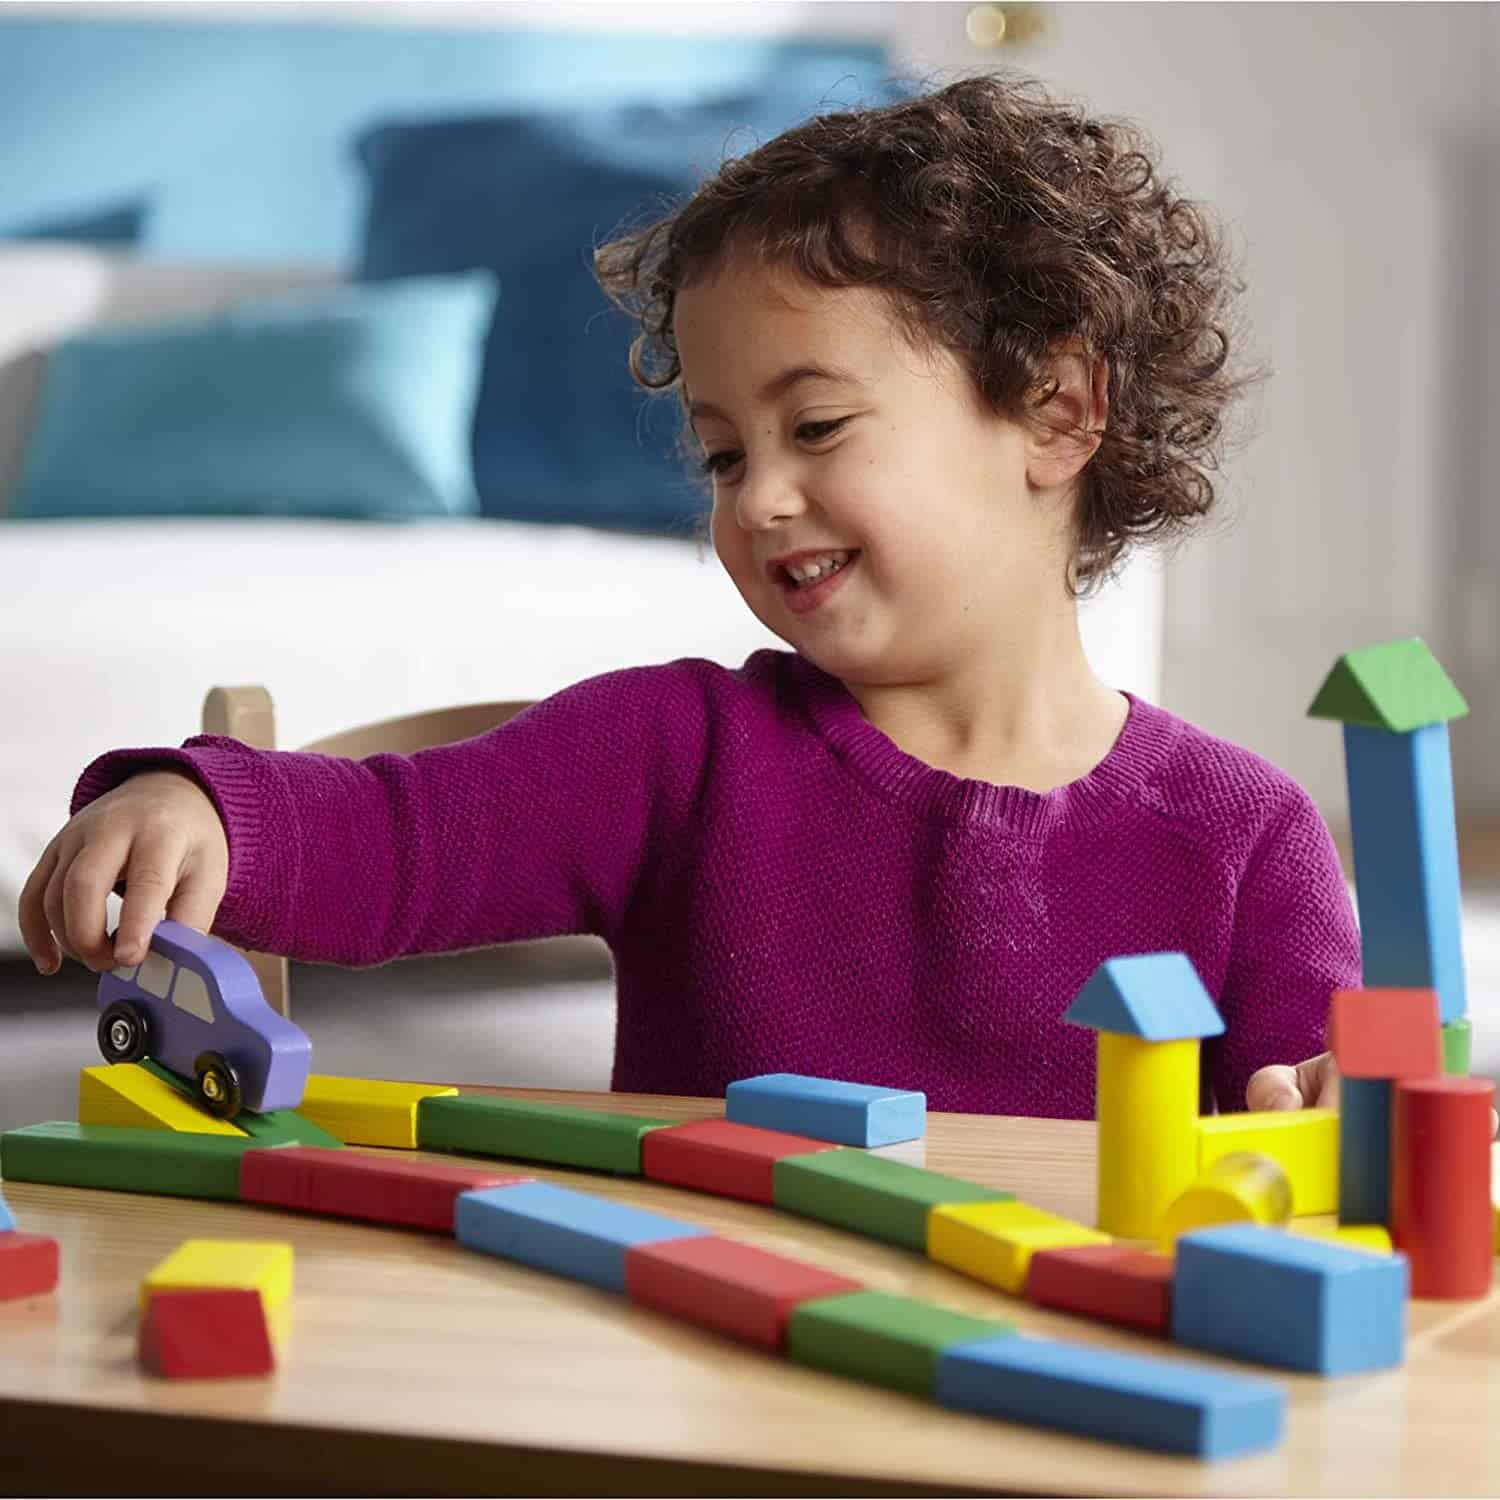 Süßestes Spielzeug zum Bauen: Melissa & Doug Coloured Wooden Block Box